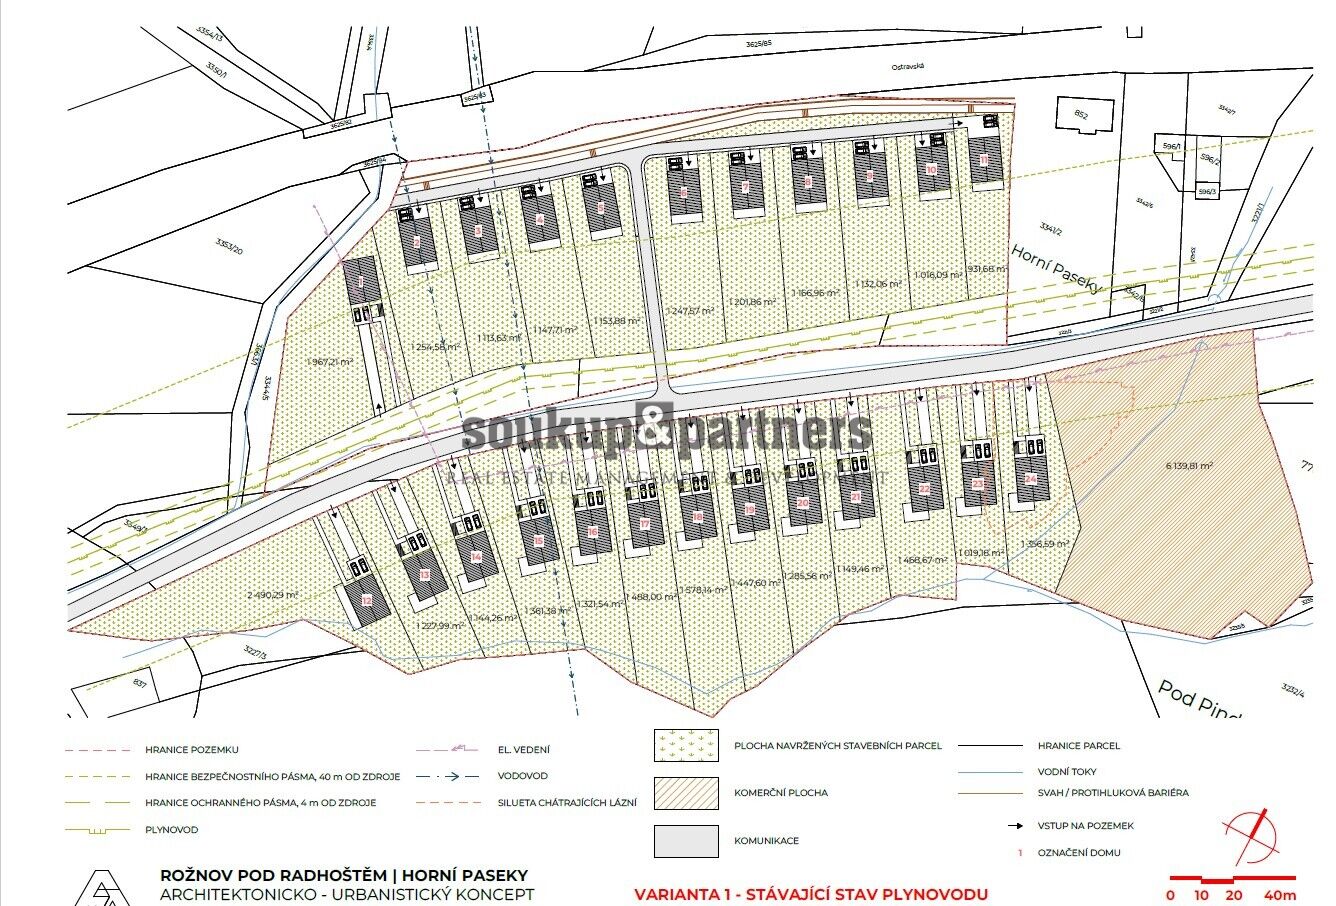 Stavební pozemky - 54.052 m2, parcelace na 24 Rodinných domů, Beskydy, Rožnov pod Radhoštěm.